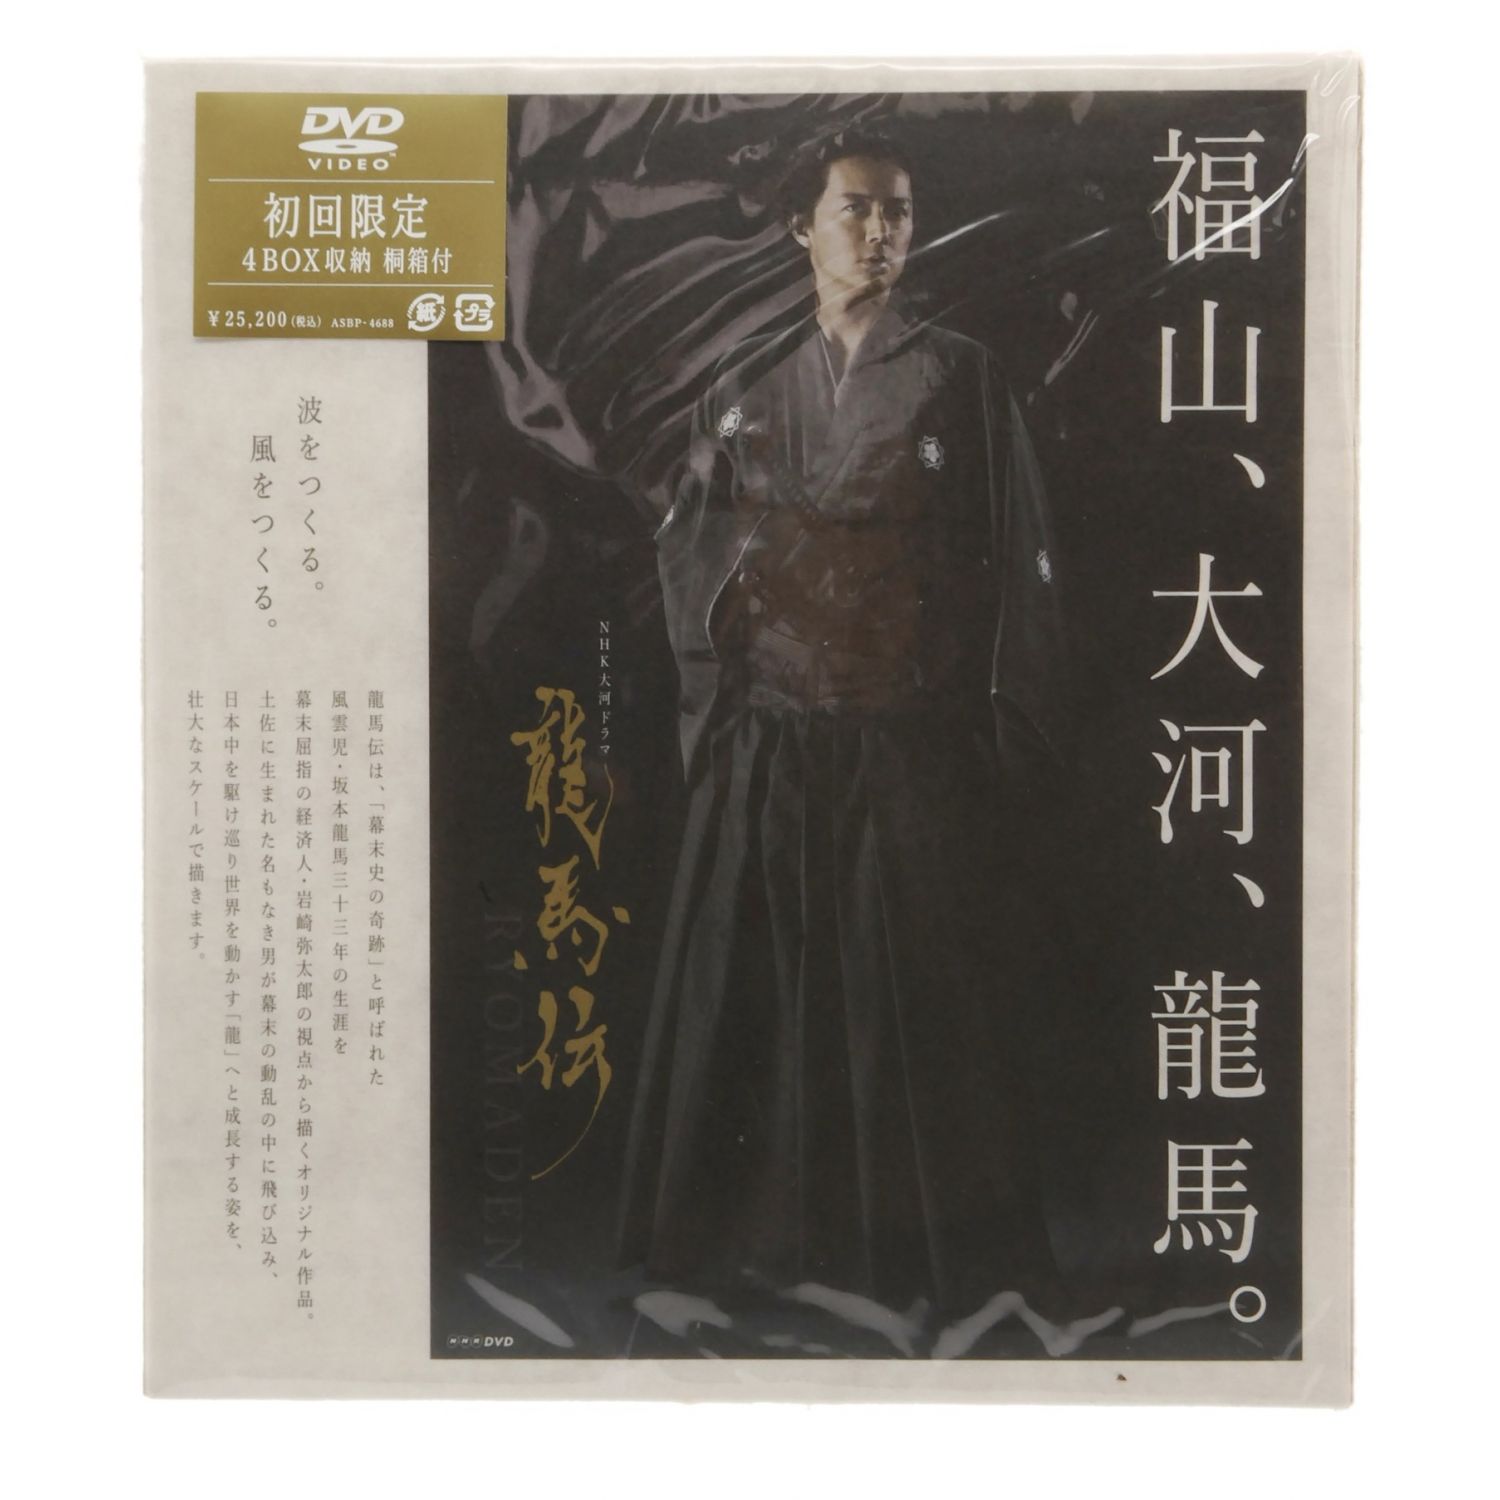 NHK大河ドラマ 龍馬伝 (りょうまでん) DVD-BOX 初回限定 4BOX収納 桐箱